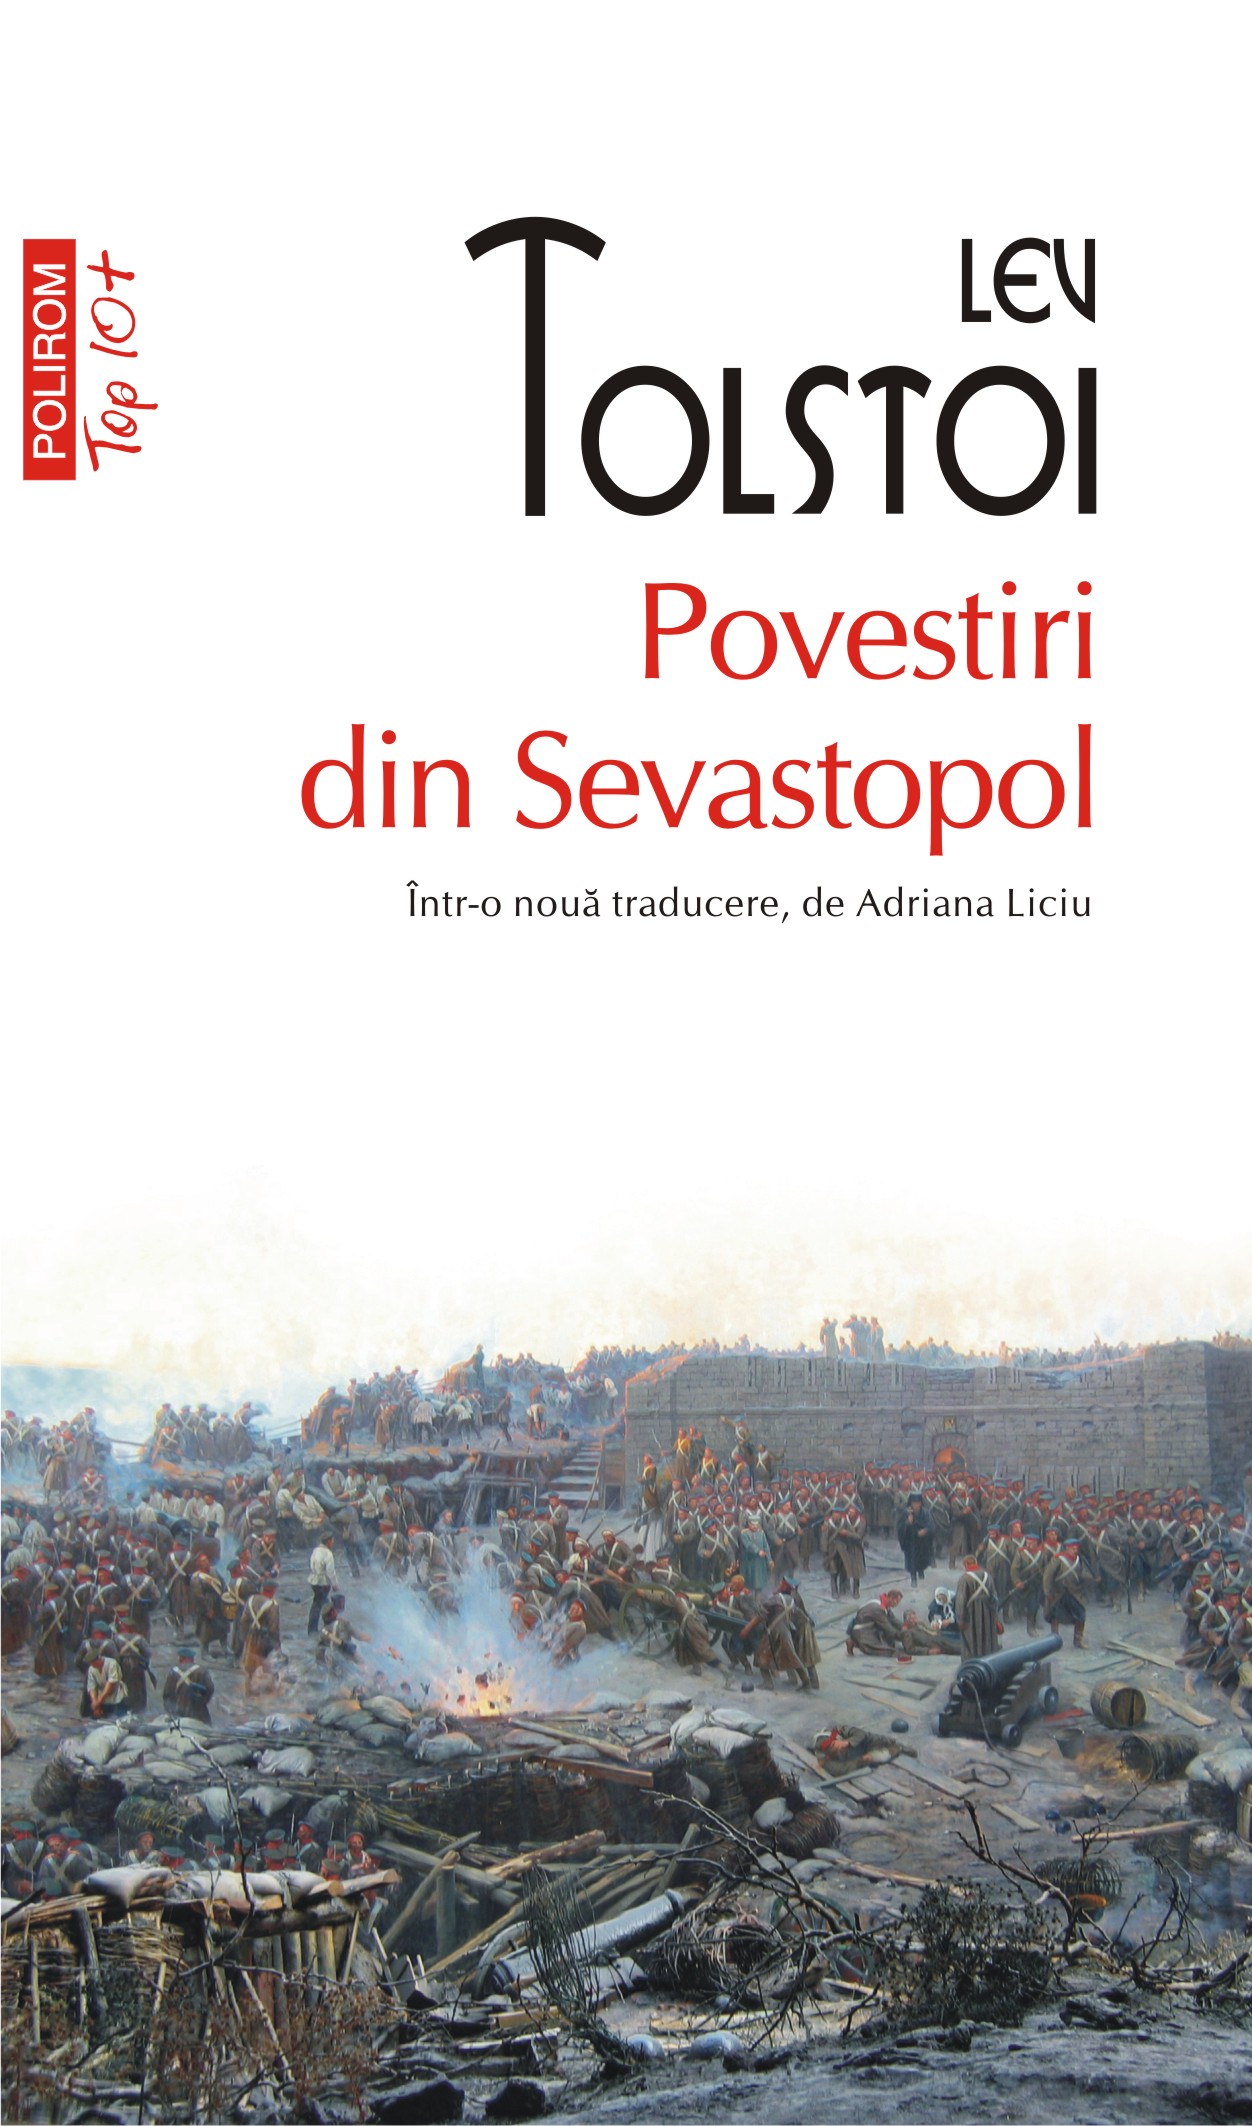 eBook Povestiri din Sevastopol - Lev Nikolaevich Tolstoi